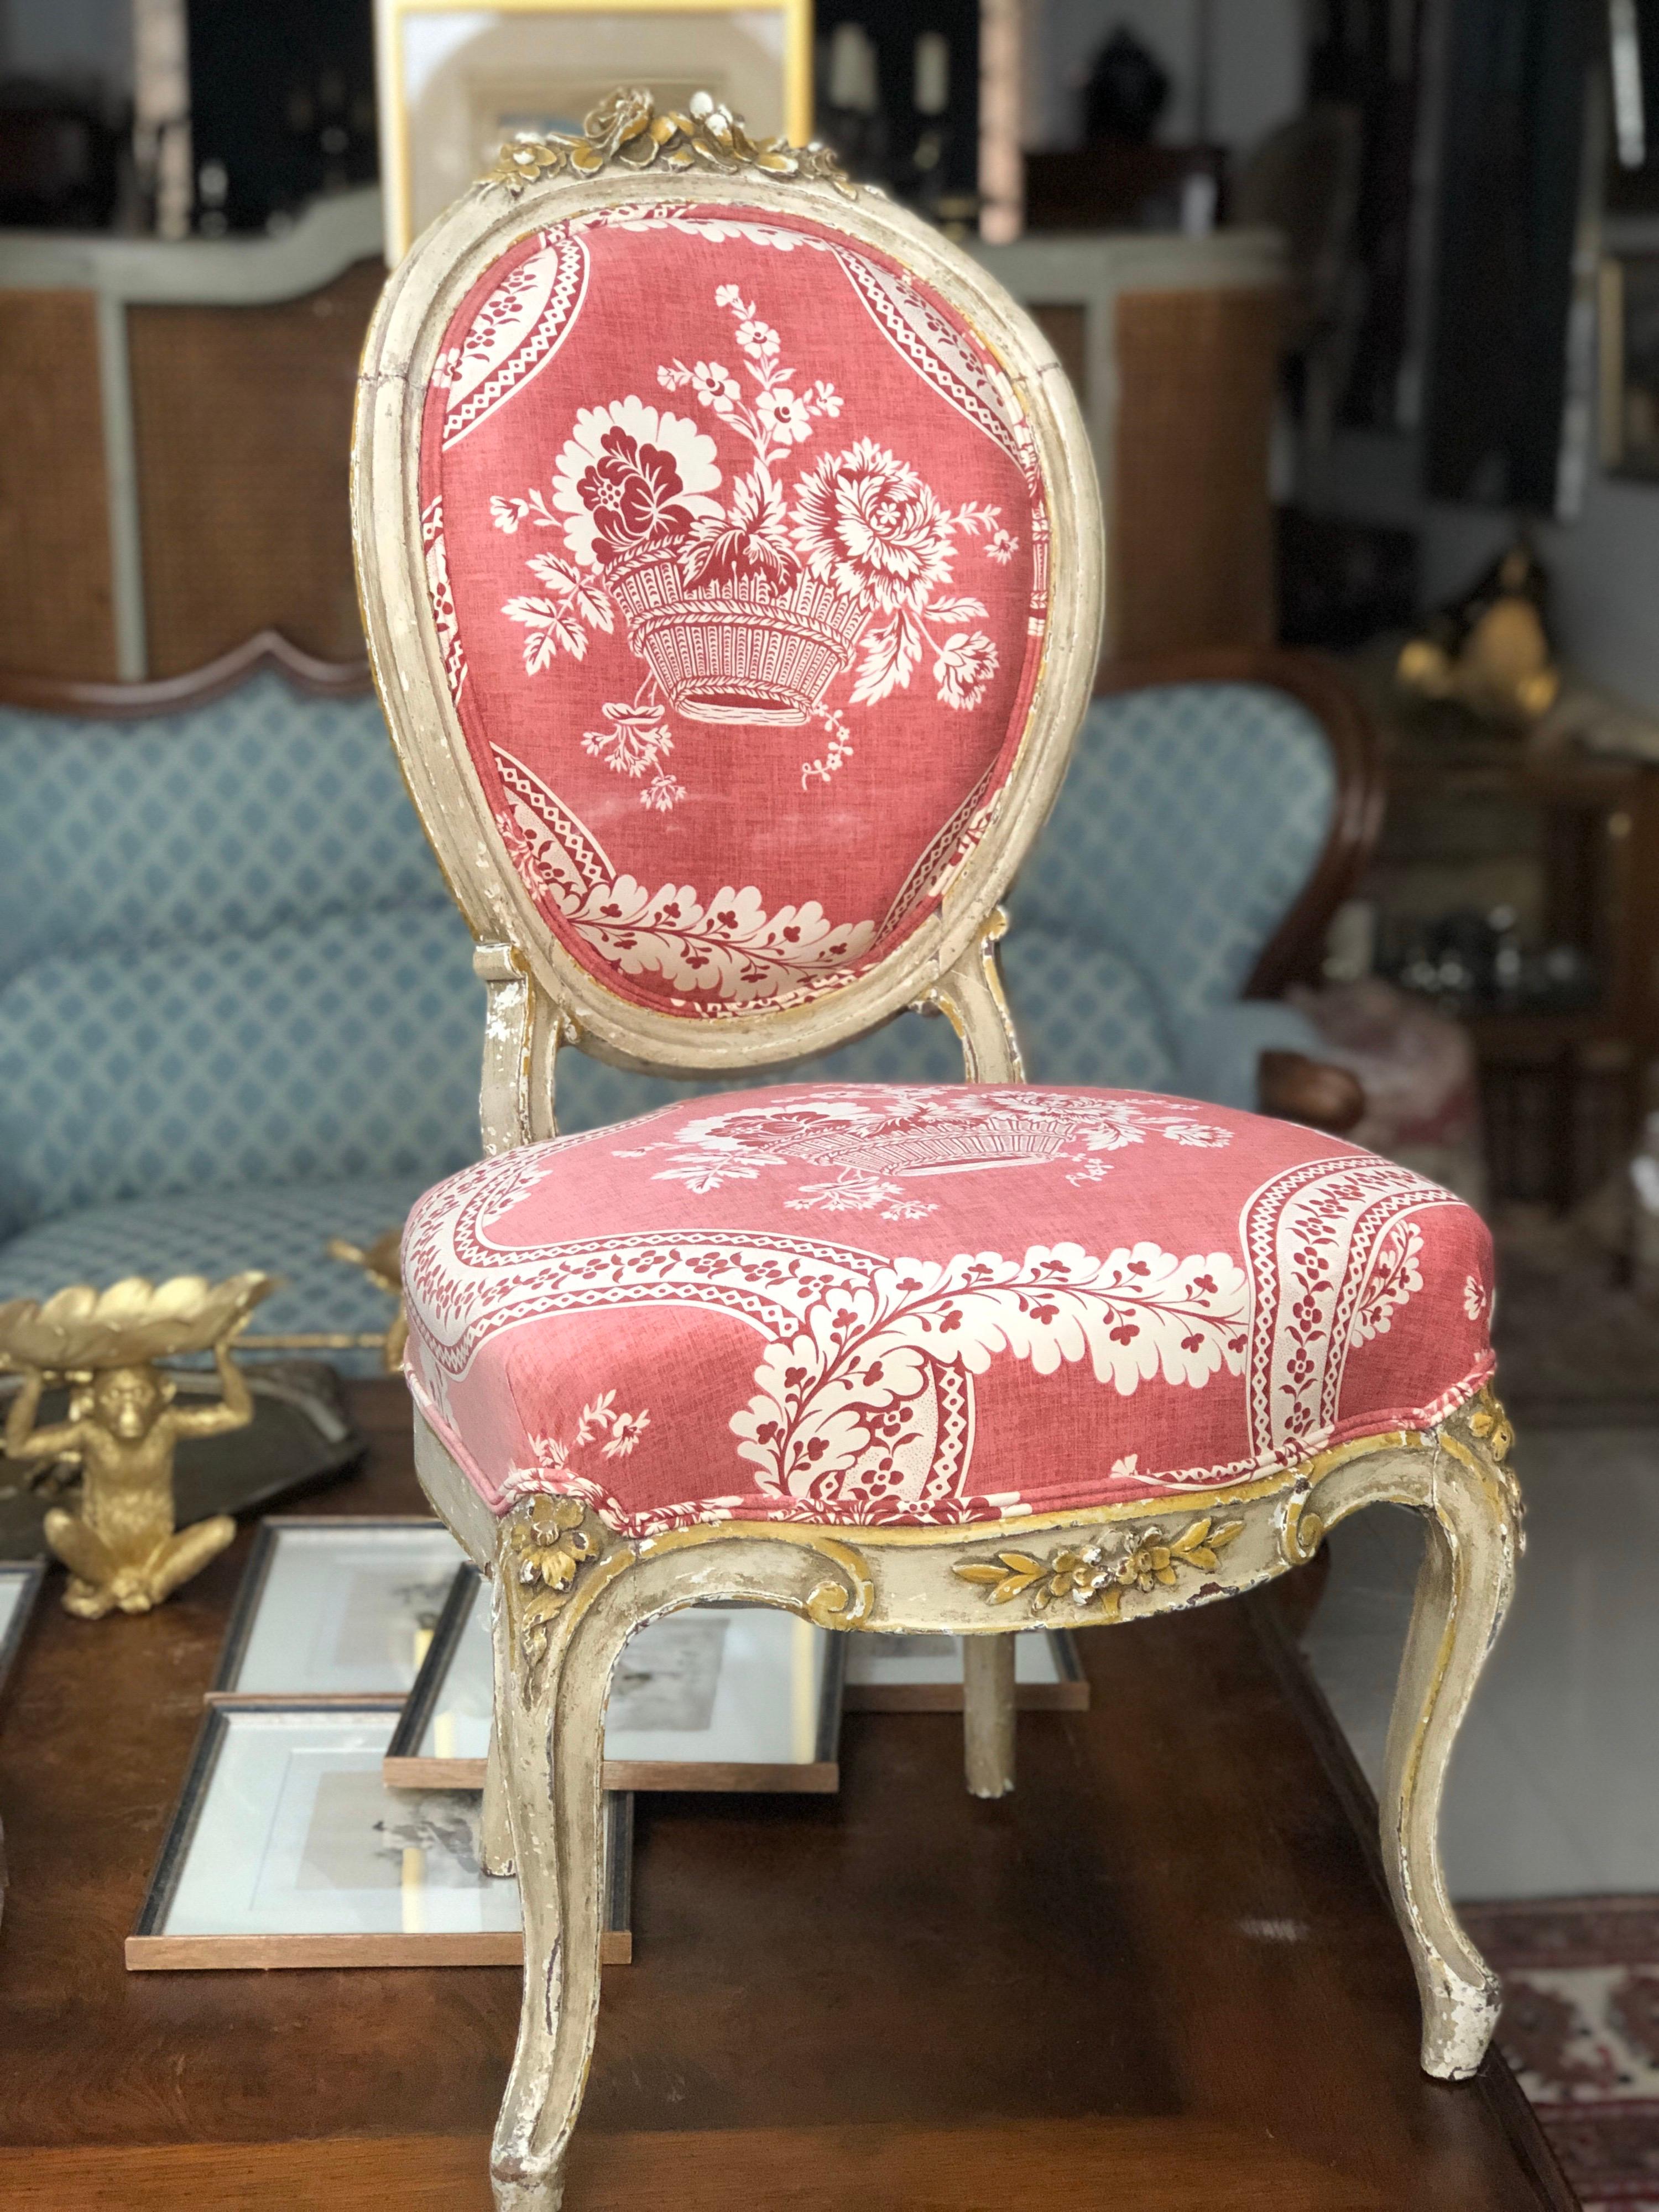 Französische Stühle aus dem 19. Jahrhundert, restauriert und cremefarben lackiert, mit zarter Goldlackierung. Die Stühle haben eine runde Rückenlehne im Louis XVI-Stil und sind in sehr gutem Zustand.
Frankreich, um 1890.